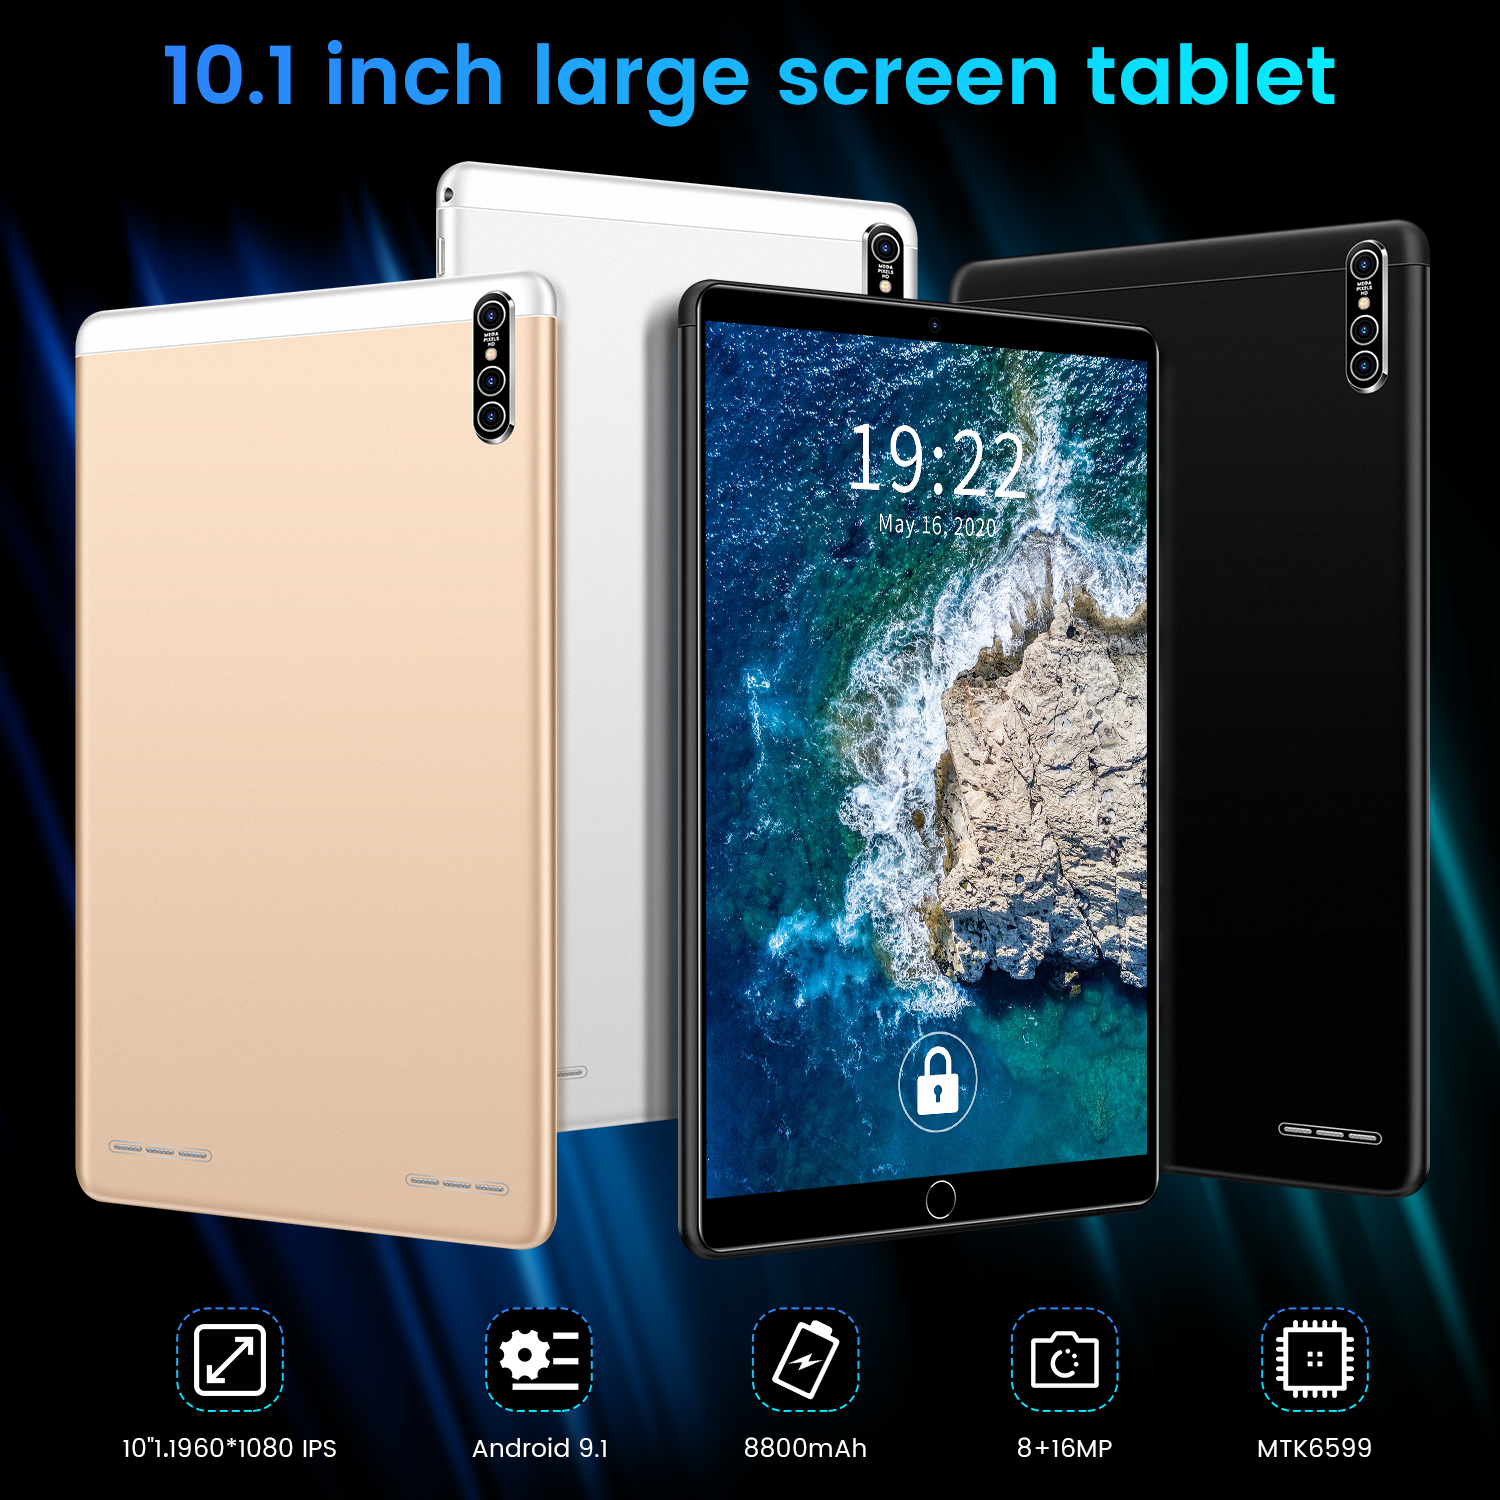 ข้อมูลเกี่ยวกับ Realmi แท็บเล็ตพีซี android 9.1Tablet pc แท็บเล็ต 10.1 นิ้ว หน้าจอโค้ง 3D tablet ( 8G+256G) ซัมซุงแท็บเล็ตหน้าจอโค้ง แท็บเล็ตอัจฉริยะ แท็บเล็ตธุรกิจสิบหลั